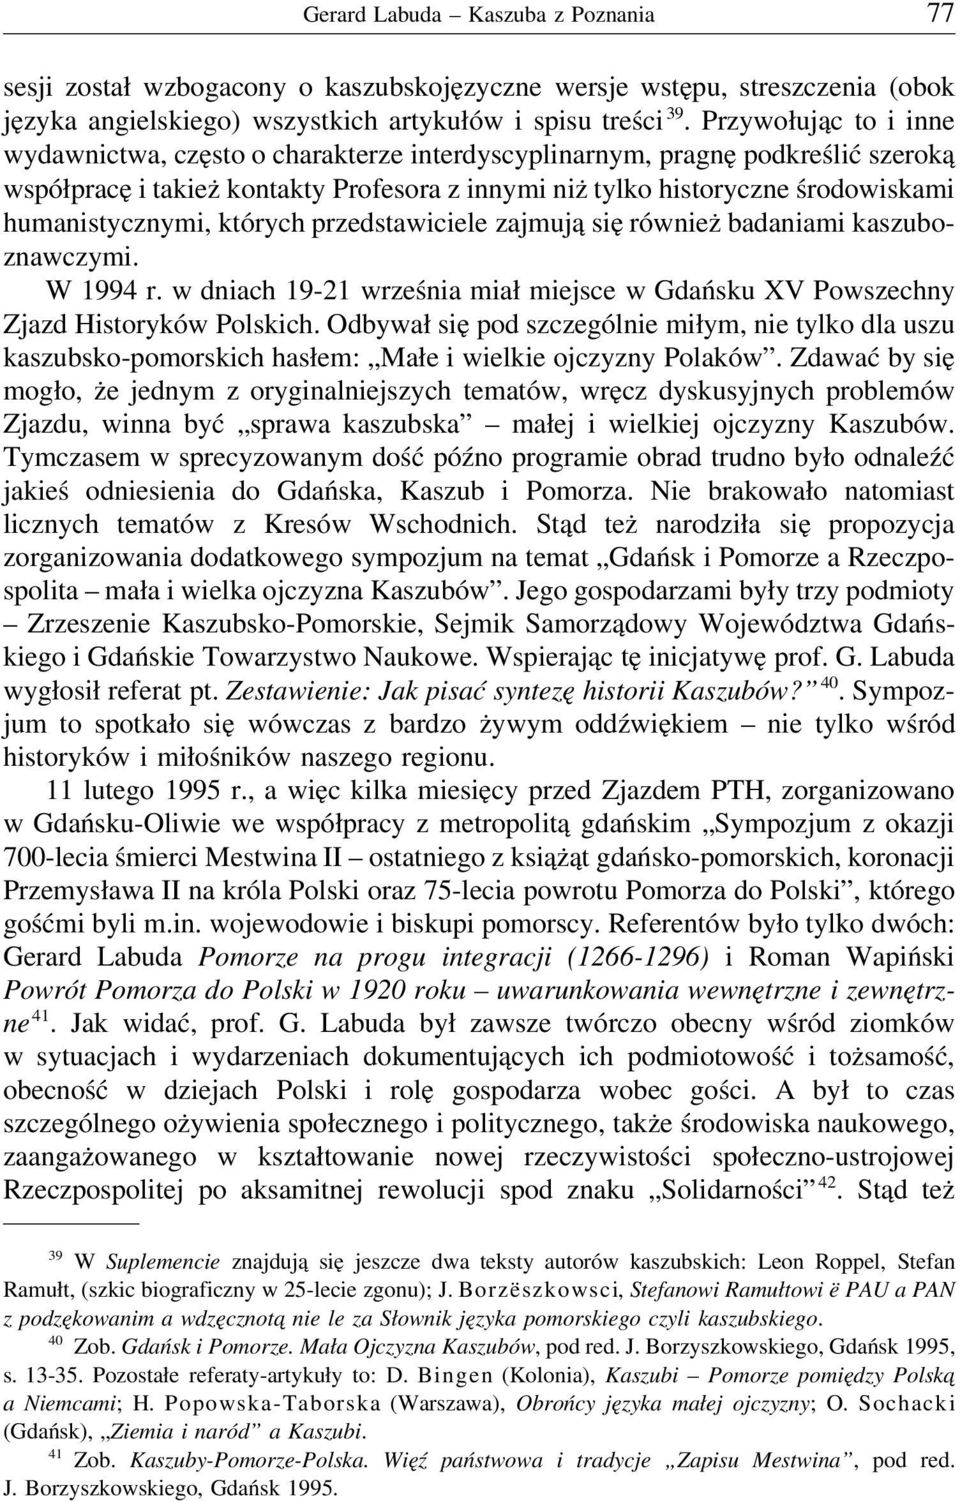 humanistycznymi, których przedstawiciele zajmują się również badaniami kaszuboznawczymi. W 1994 r. w dniach 19-21 września miał miejsce w Gdańsku XV Powszechny Zjazd Historyków Polskich.